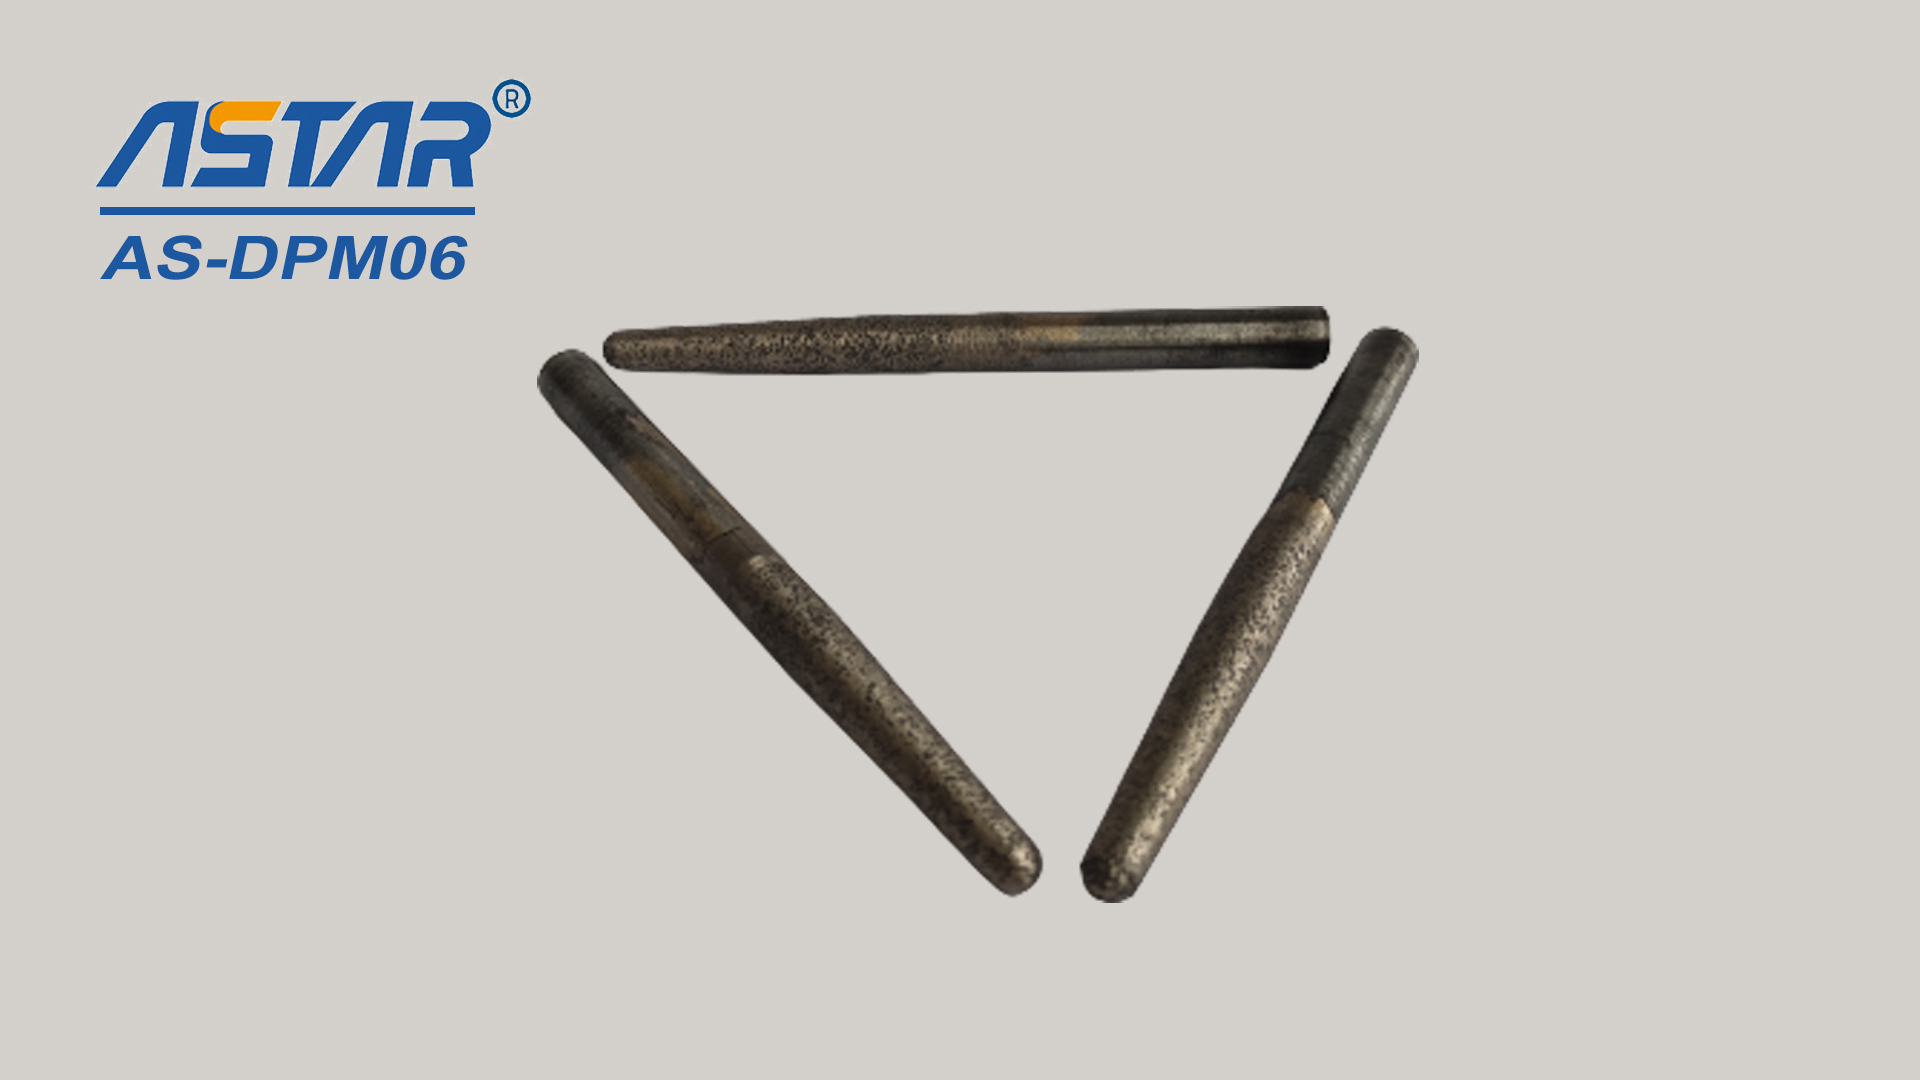 Elmas metal konik noktalar küçük alanları ezmek ve cilalamak için kullanılır, 6 mm ila 12 mm çapında delik ve oluk